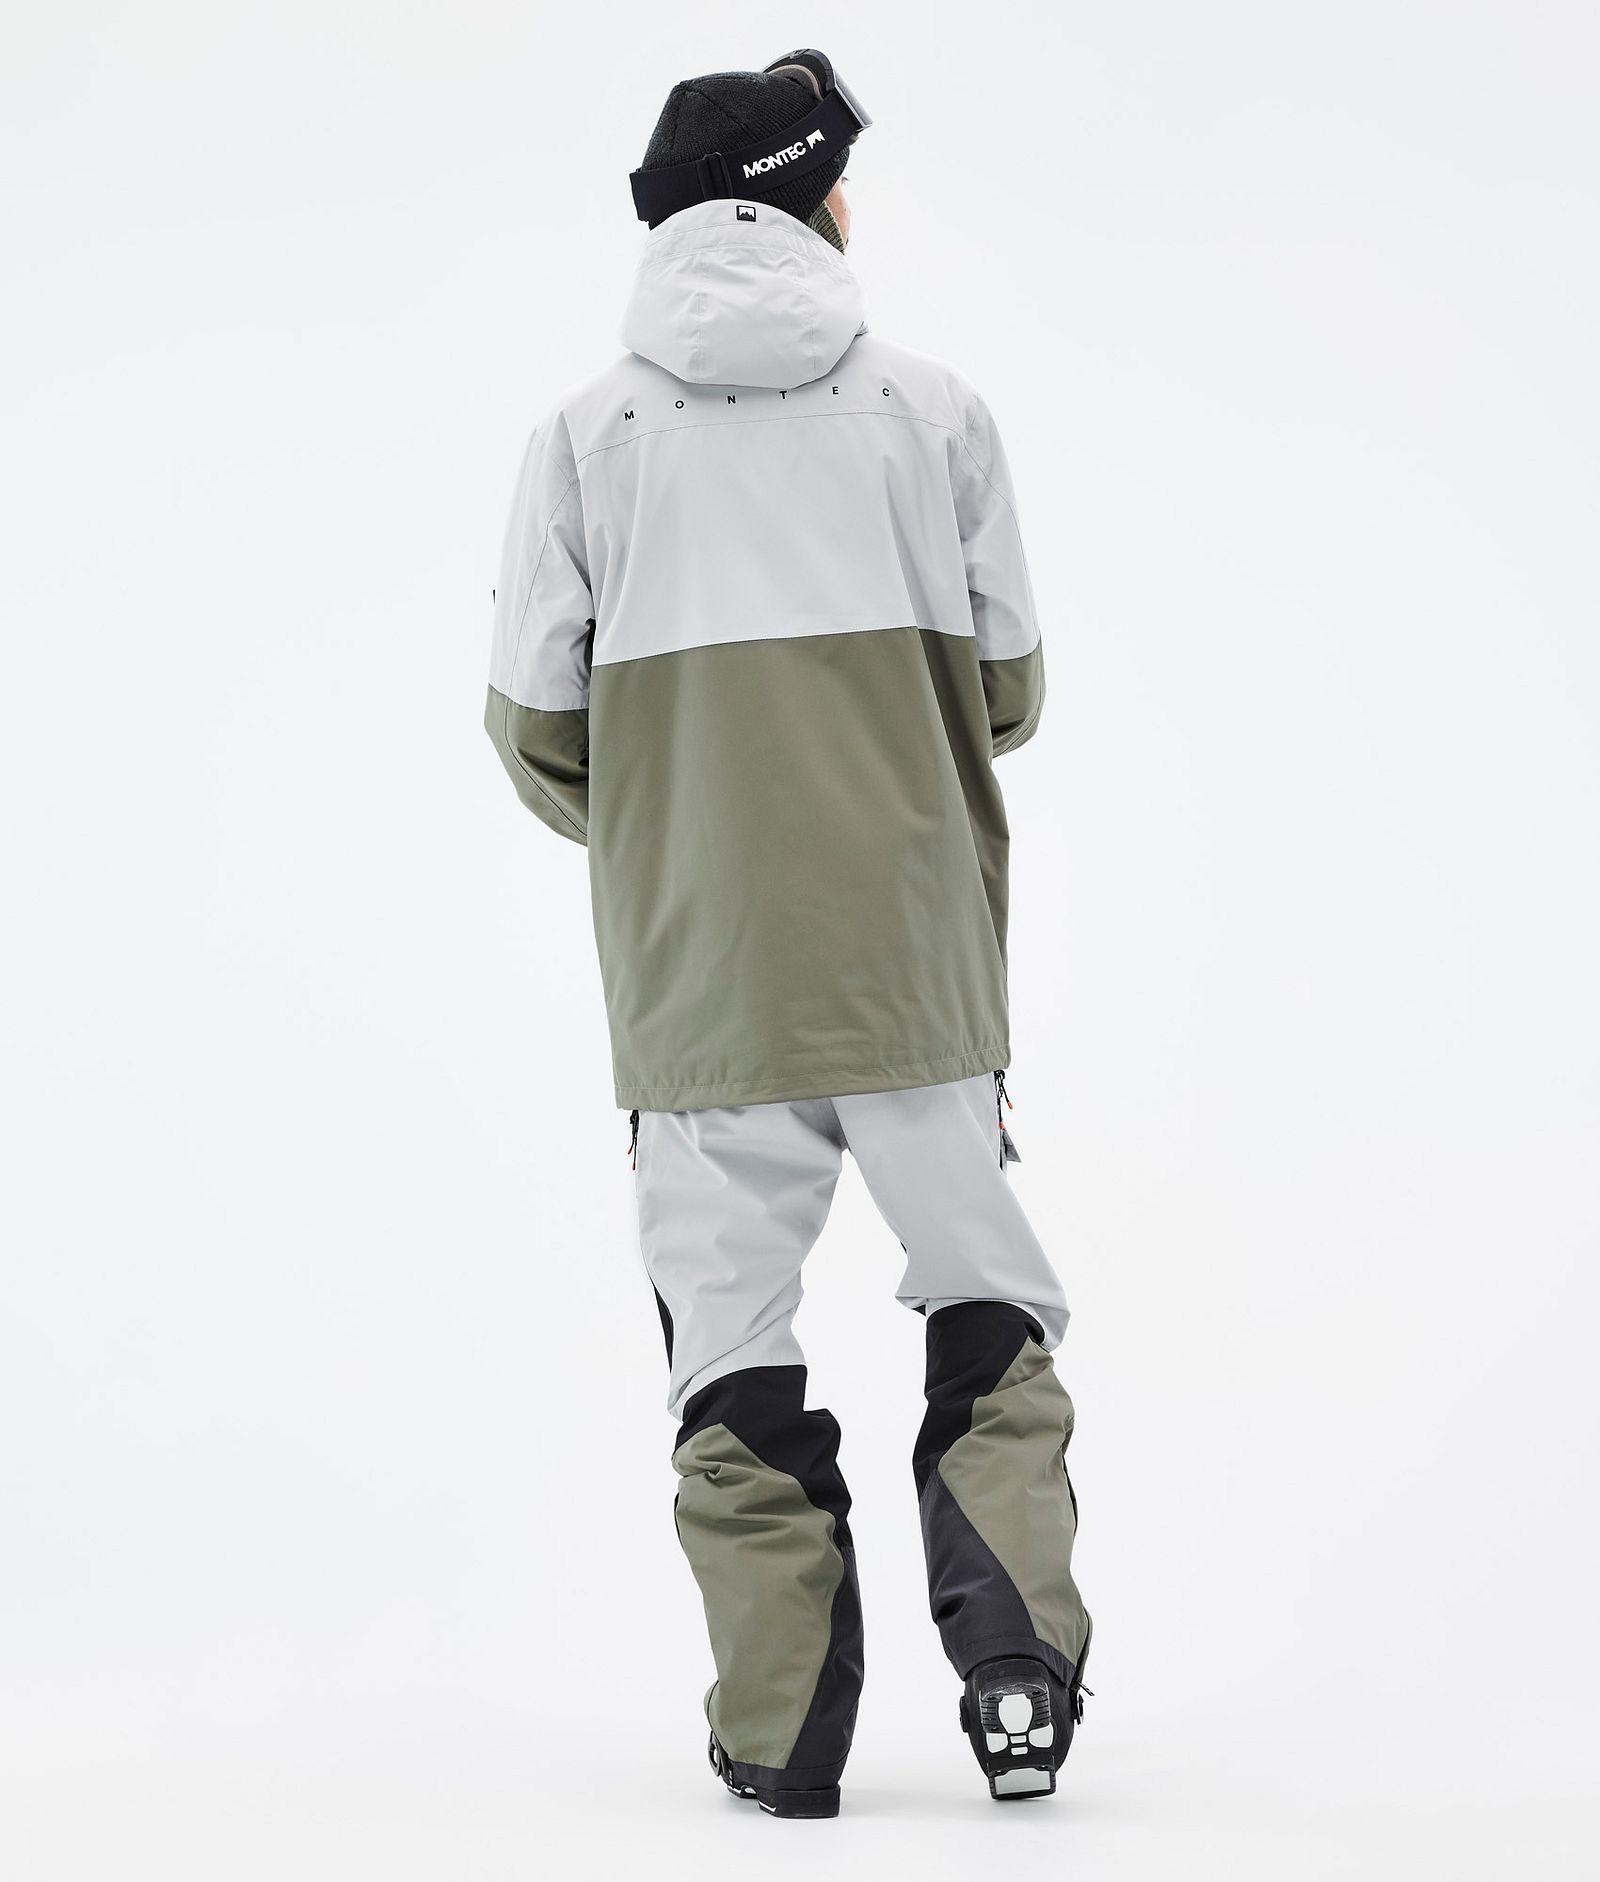 Doom Ski Jacket Men Light Grey/Black/Greenish, Image 5 of 11